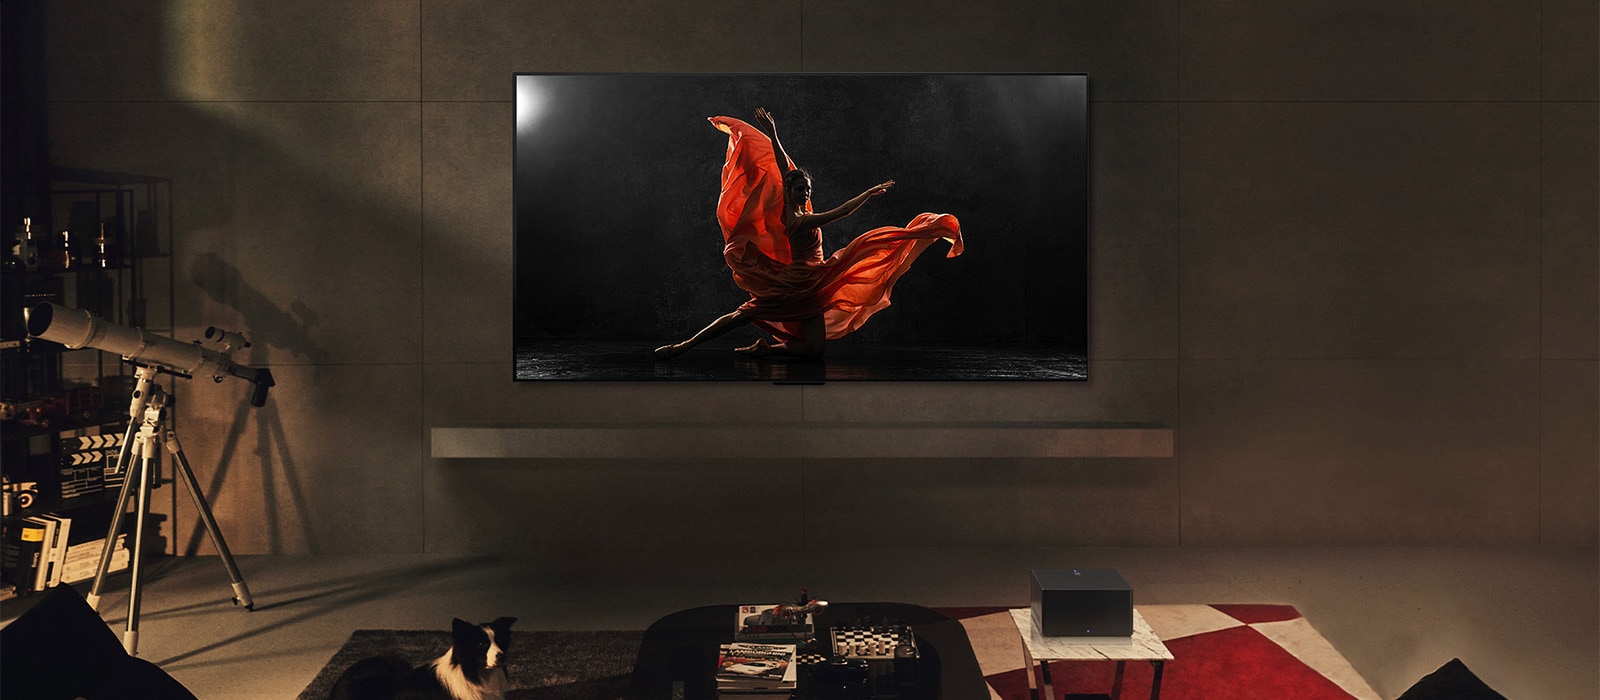 LG SIGNATURE OLED M4 tévé és LG Soundbar hangprojektor egy modern nappaliban éjszaka. A sötét színpadon táncost ábrázoló képernyőkép az ideális fényerősséggel jelenik meg.